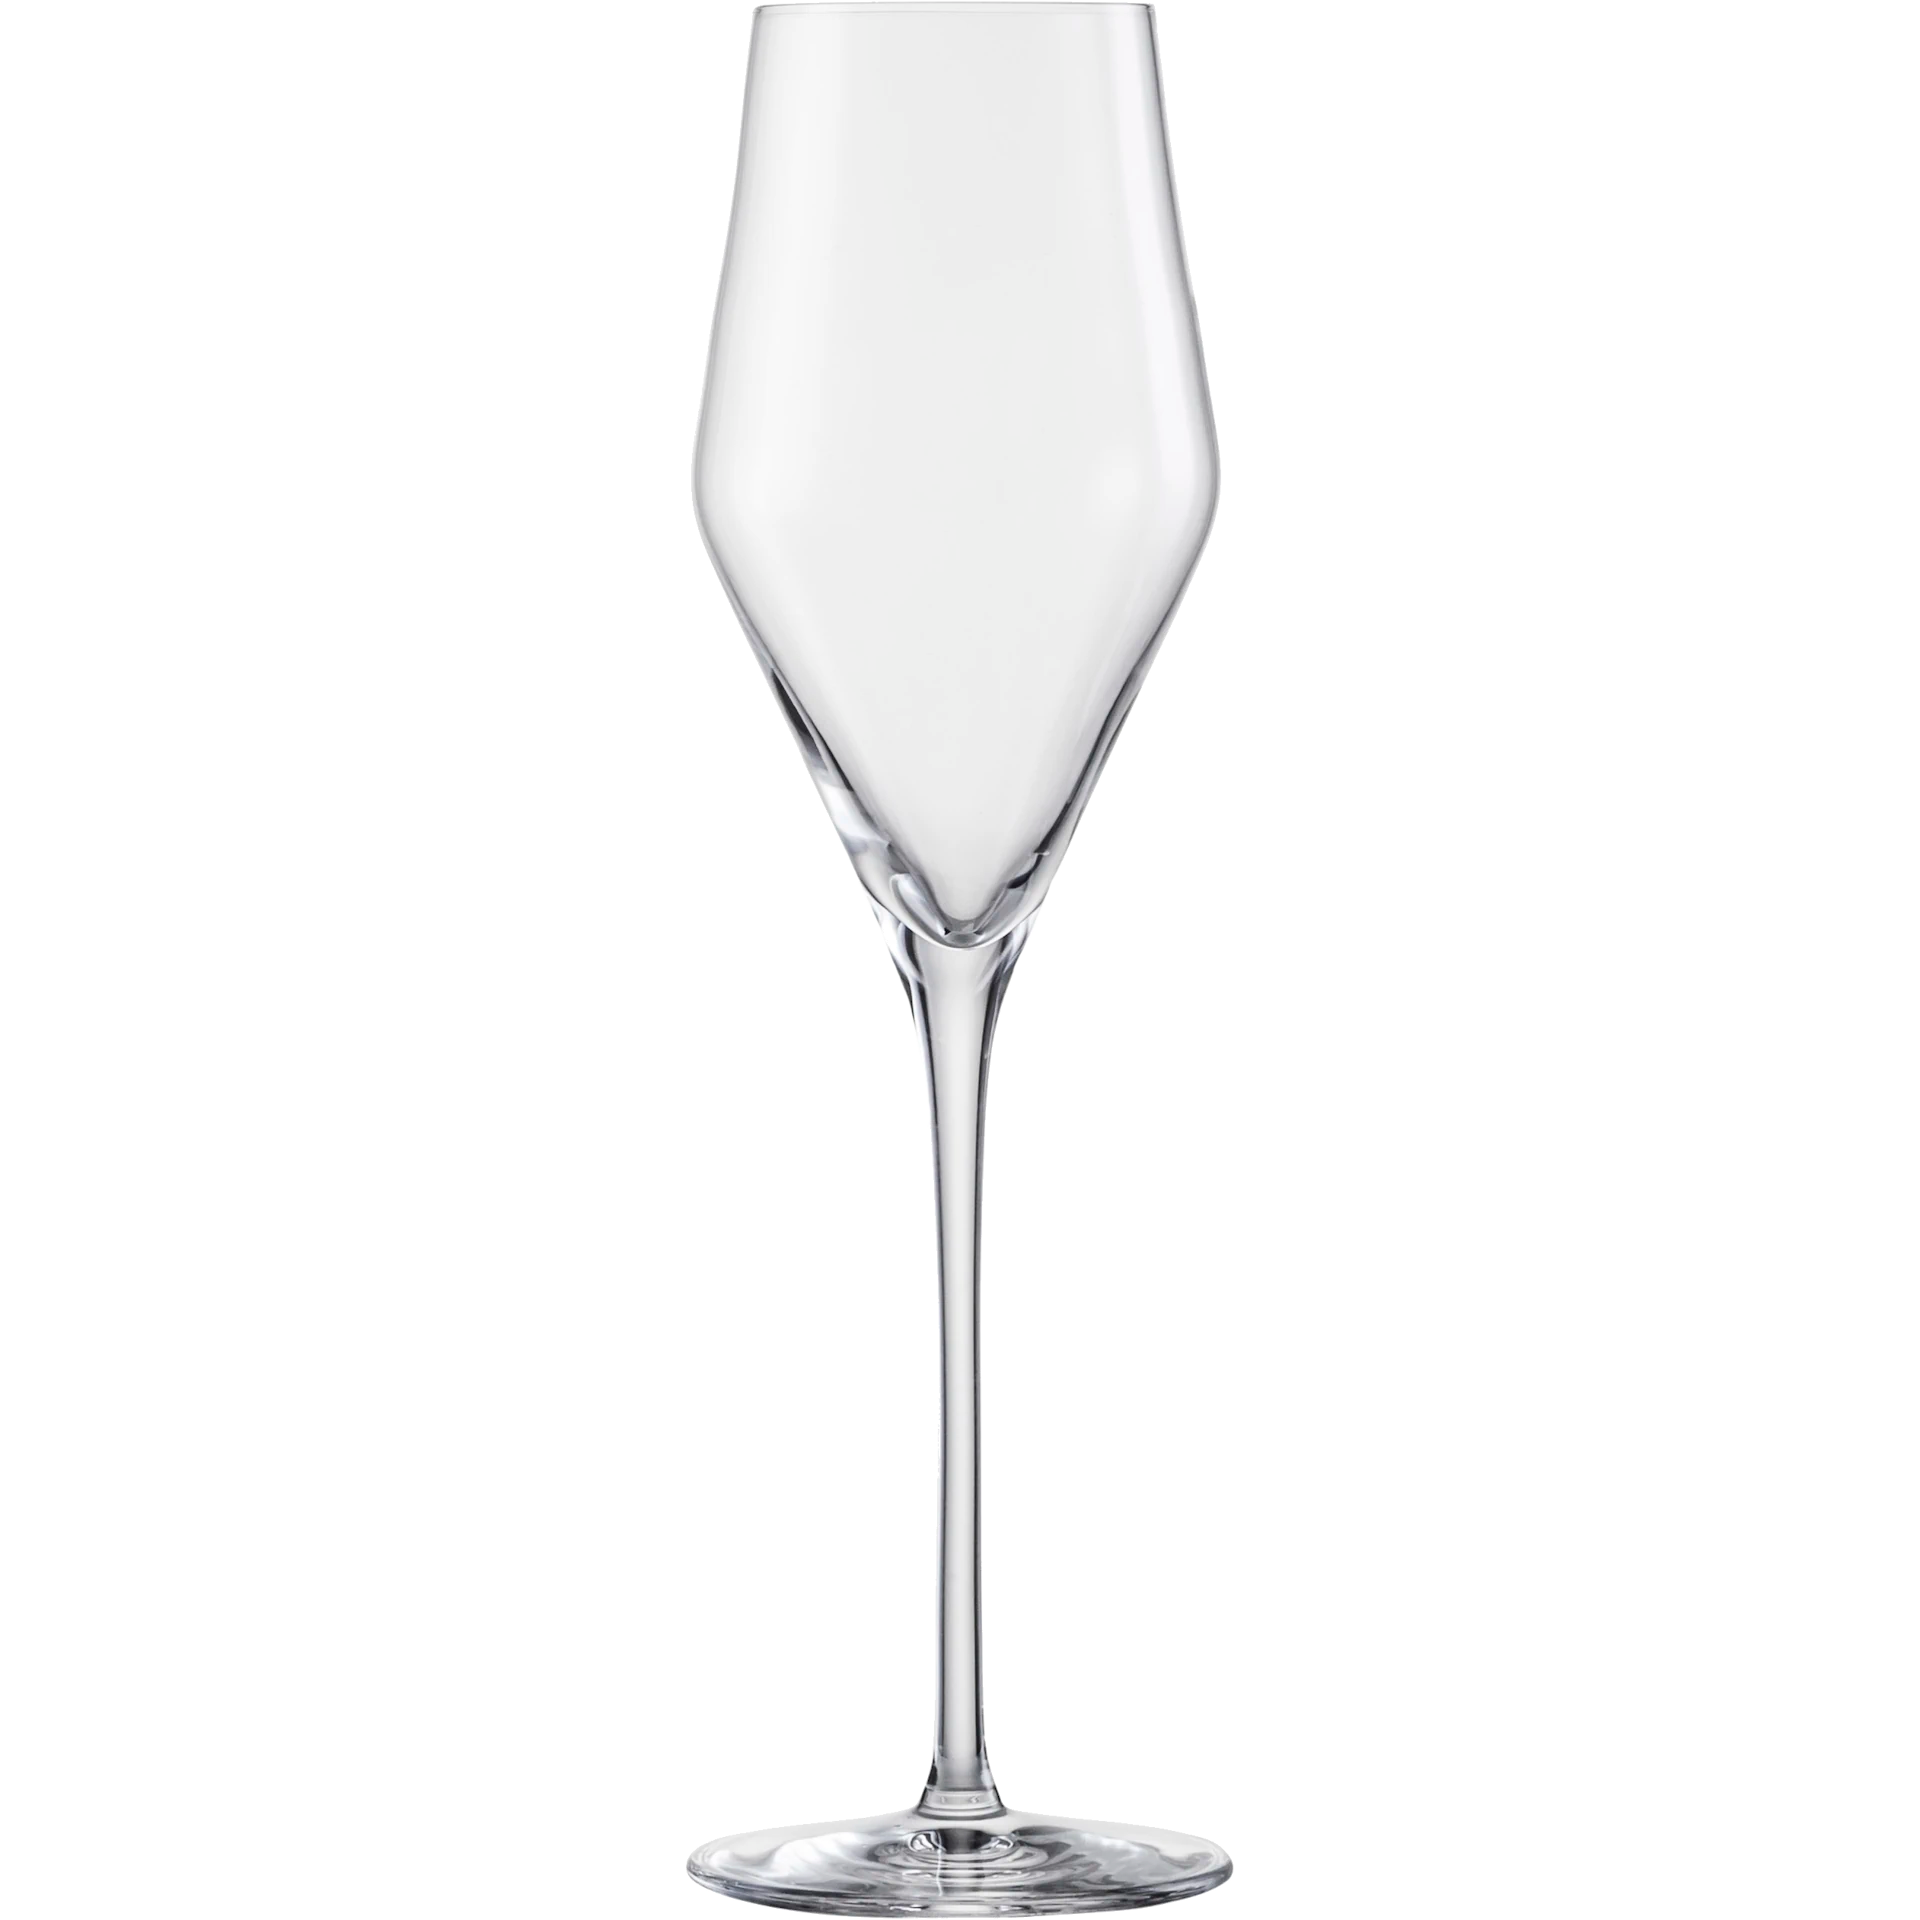 Eisch Champagnerglas - 2 Stück im Geschenkkarton 518/7 Einzelglas